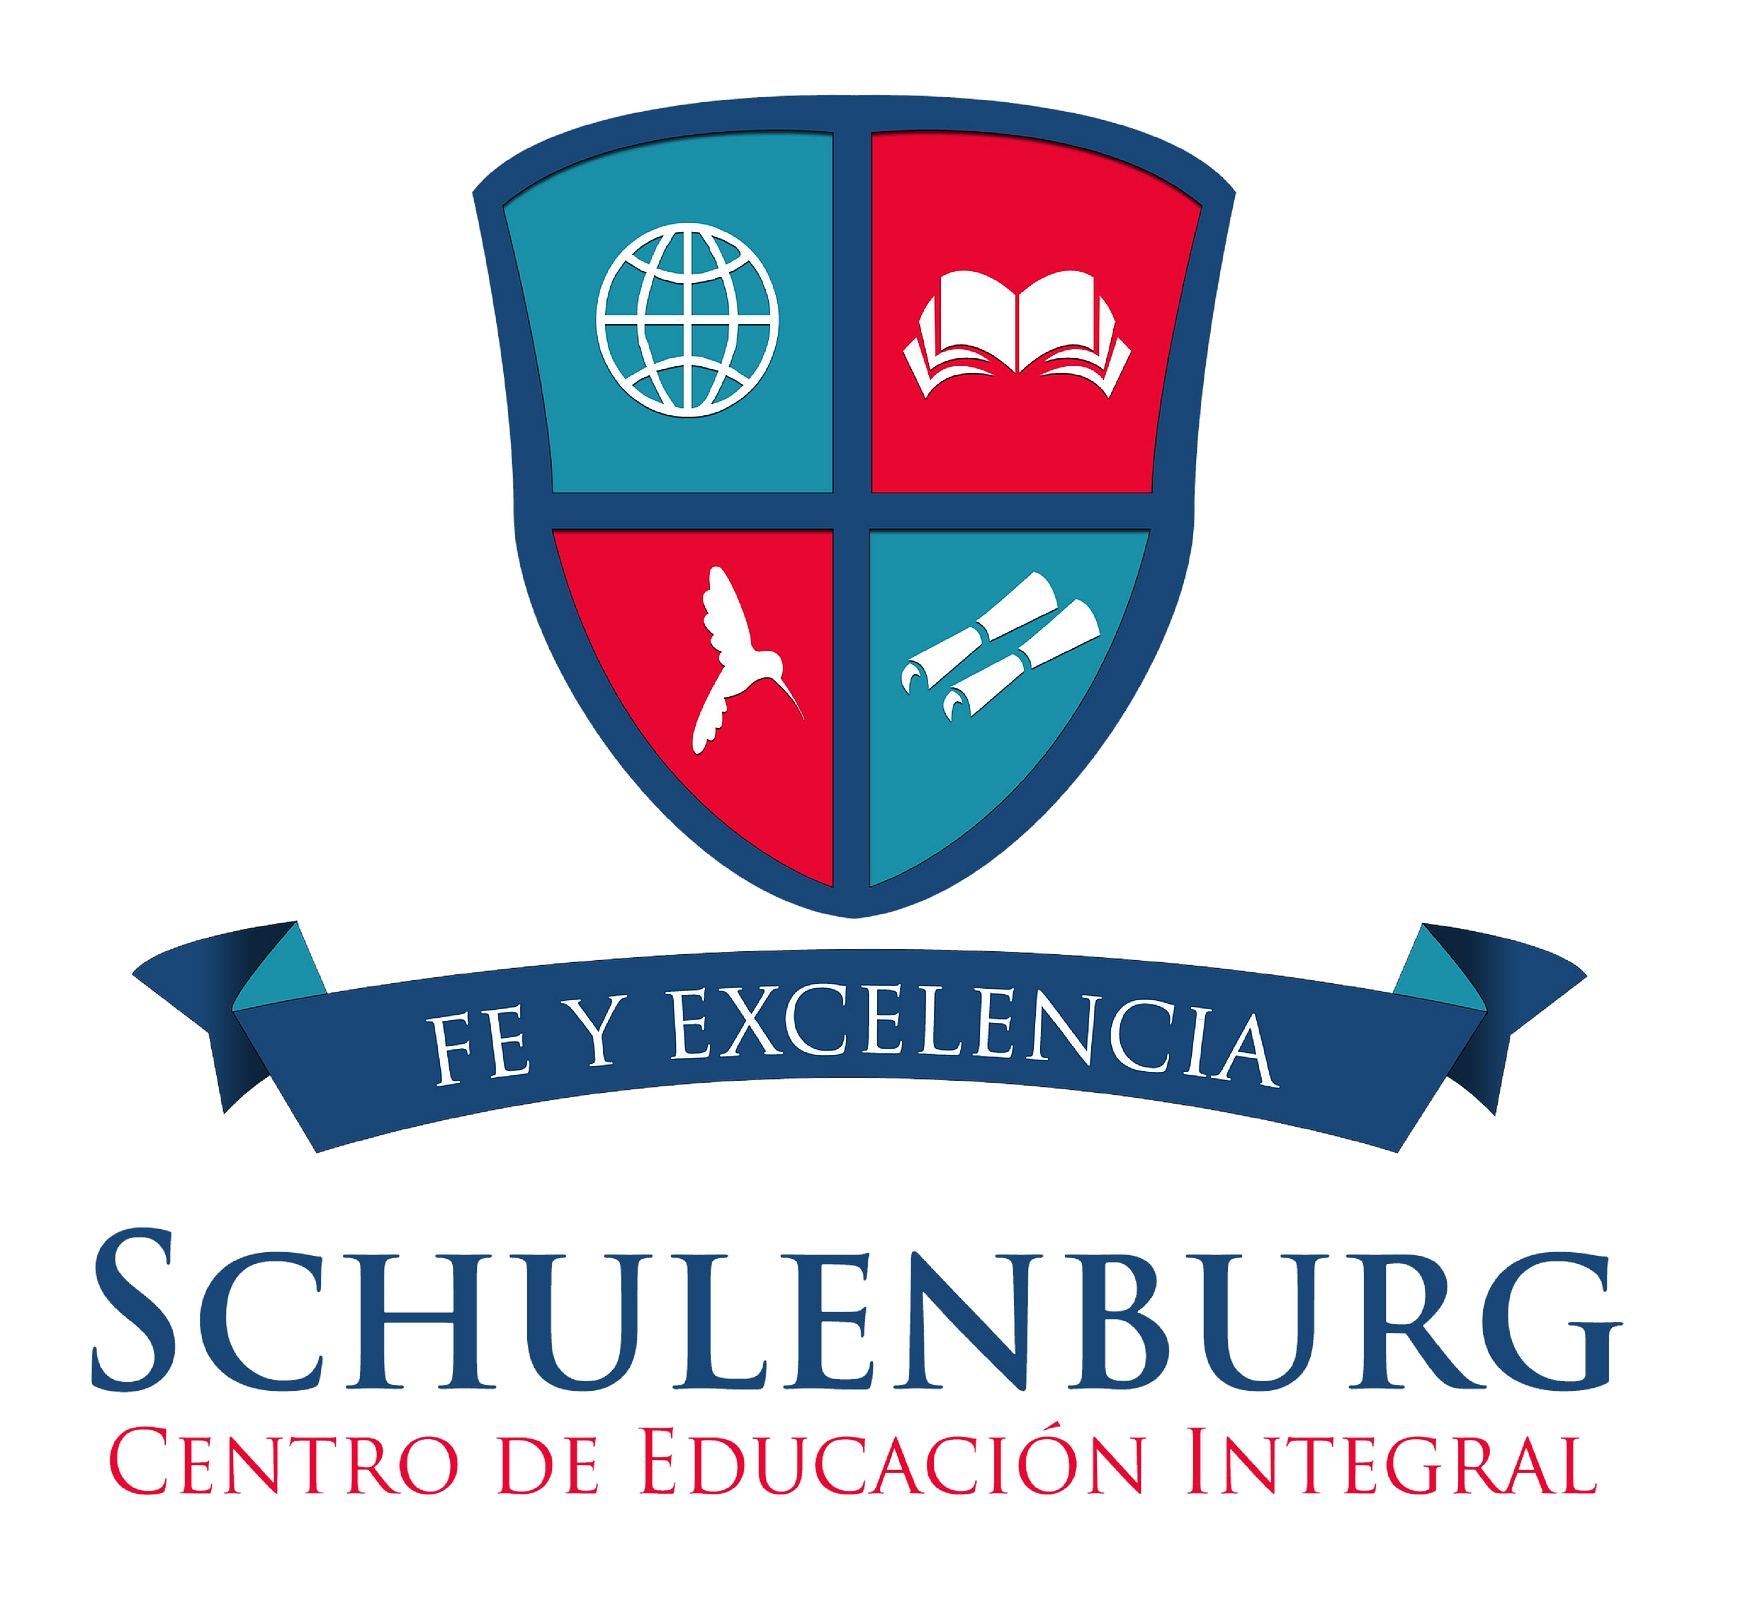 colegio schulenburg balbuena logo